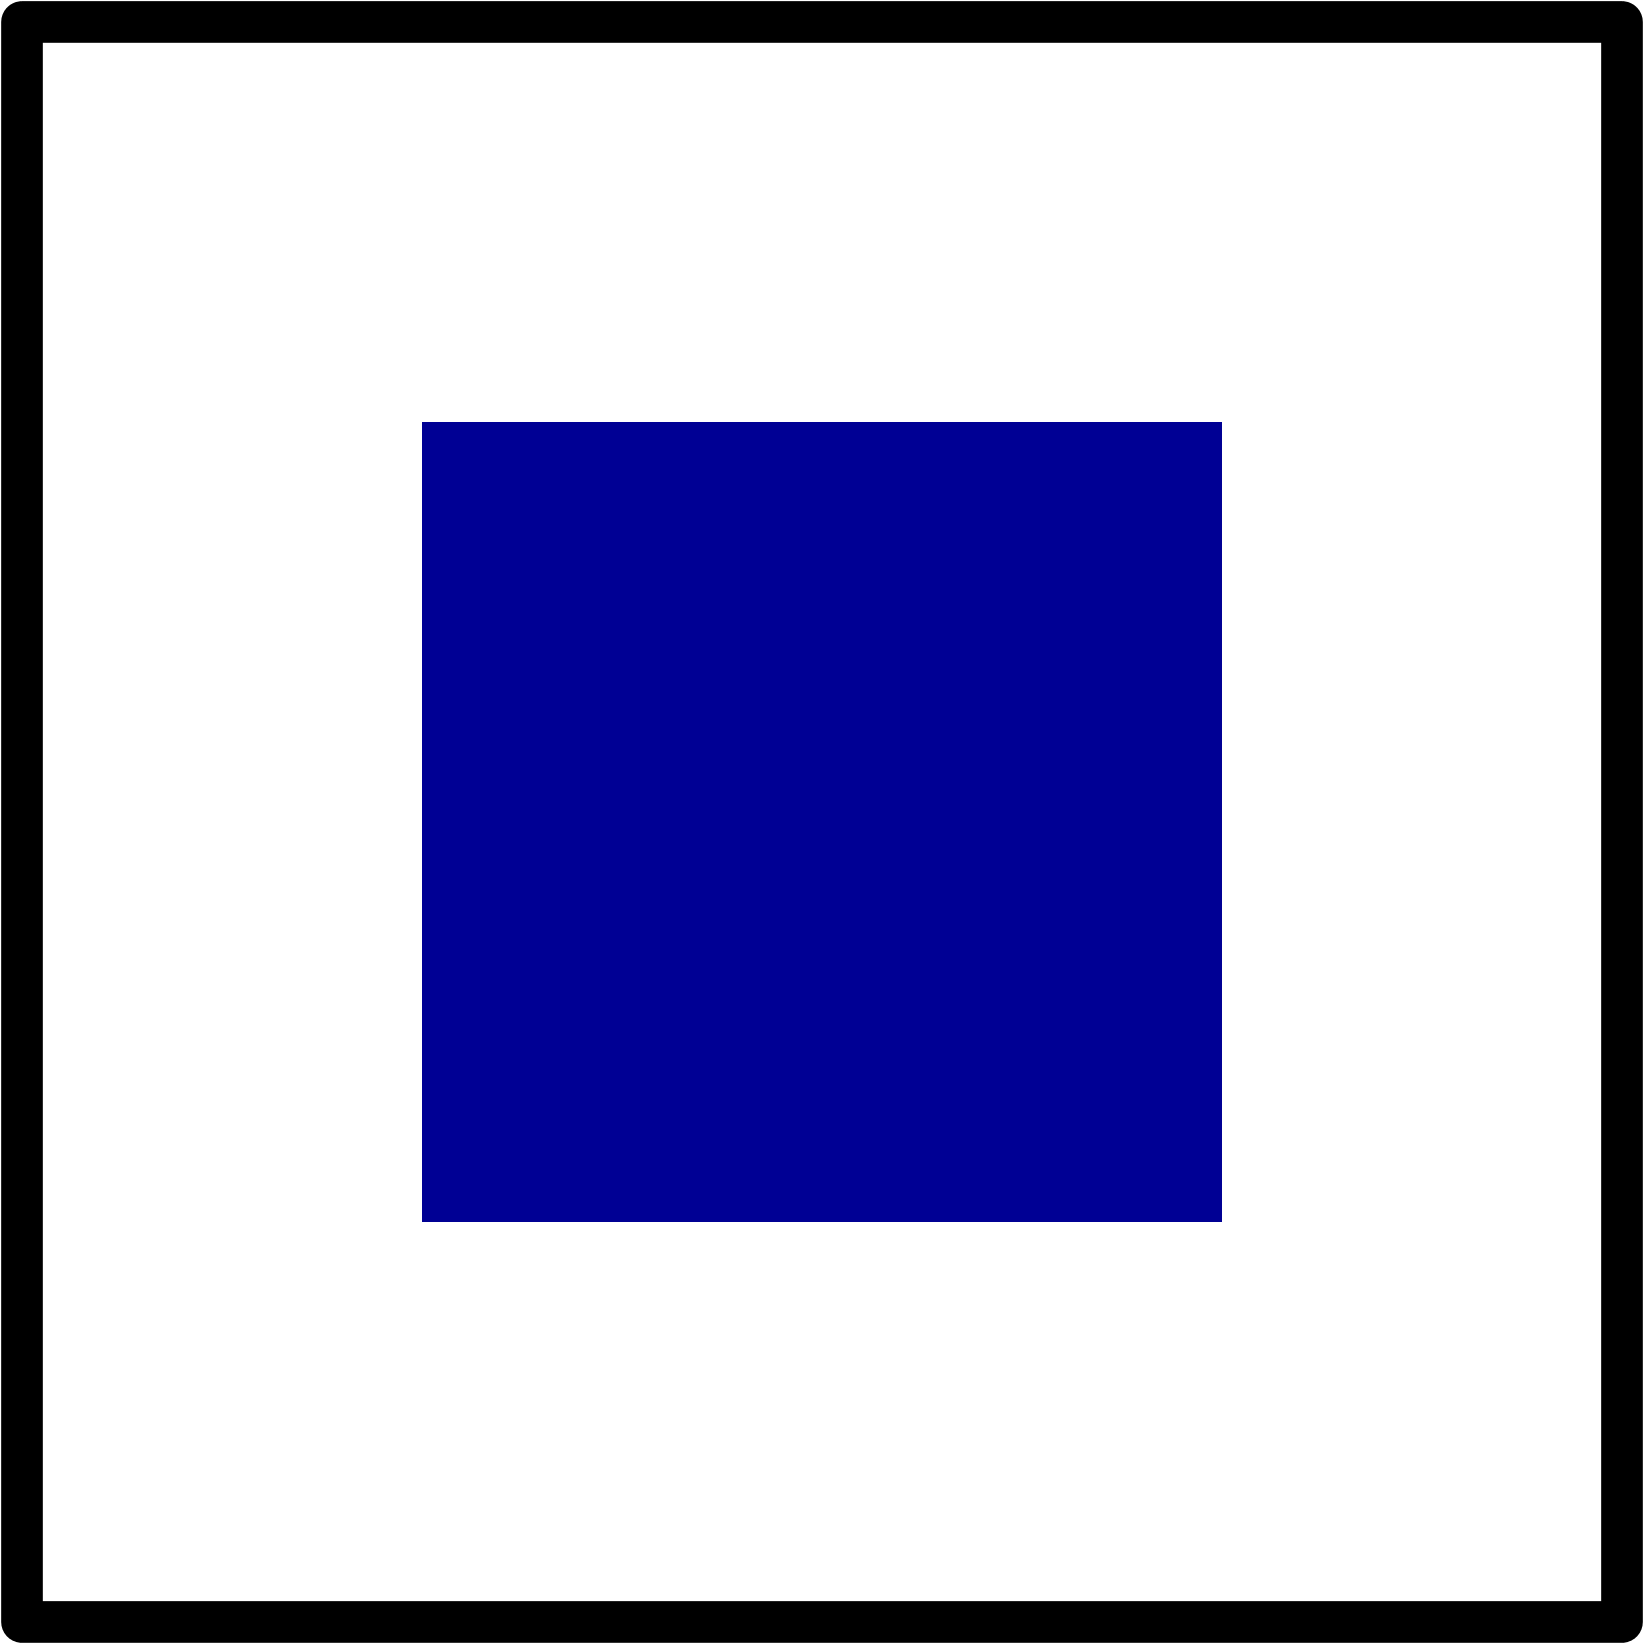 Маленькие картинки квадрат. Квадрат. Синий квадрат. Синийквадрат ГП белом фоне. Синий квадратик.